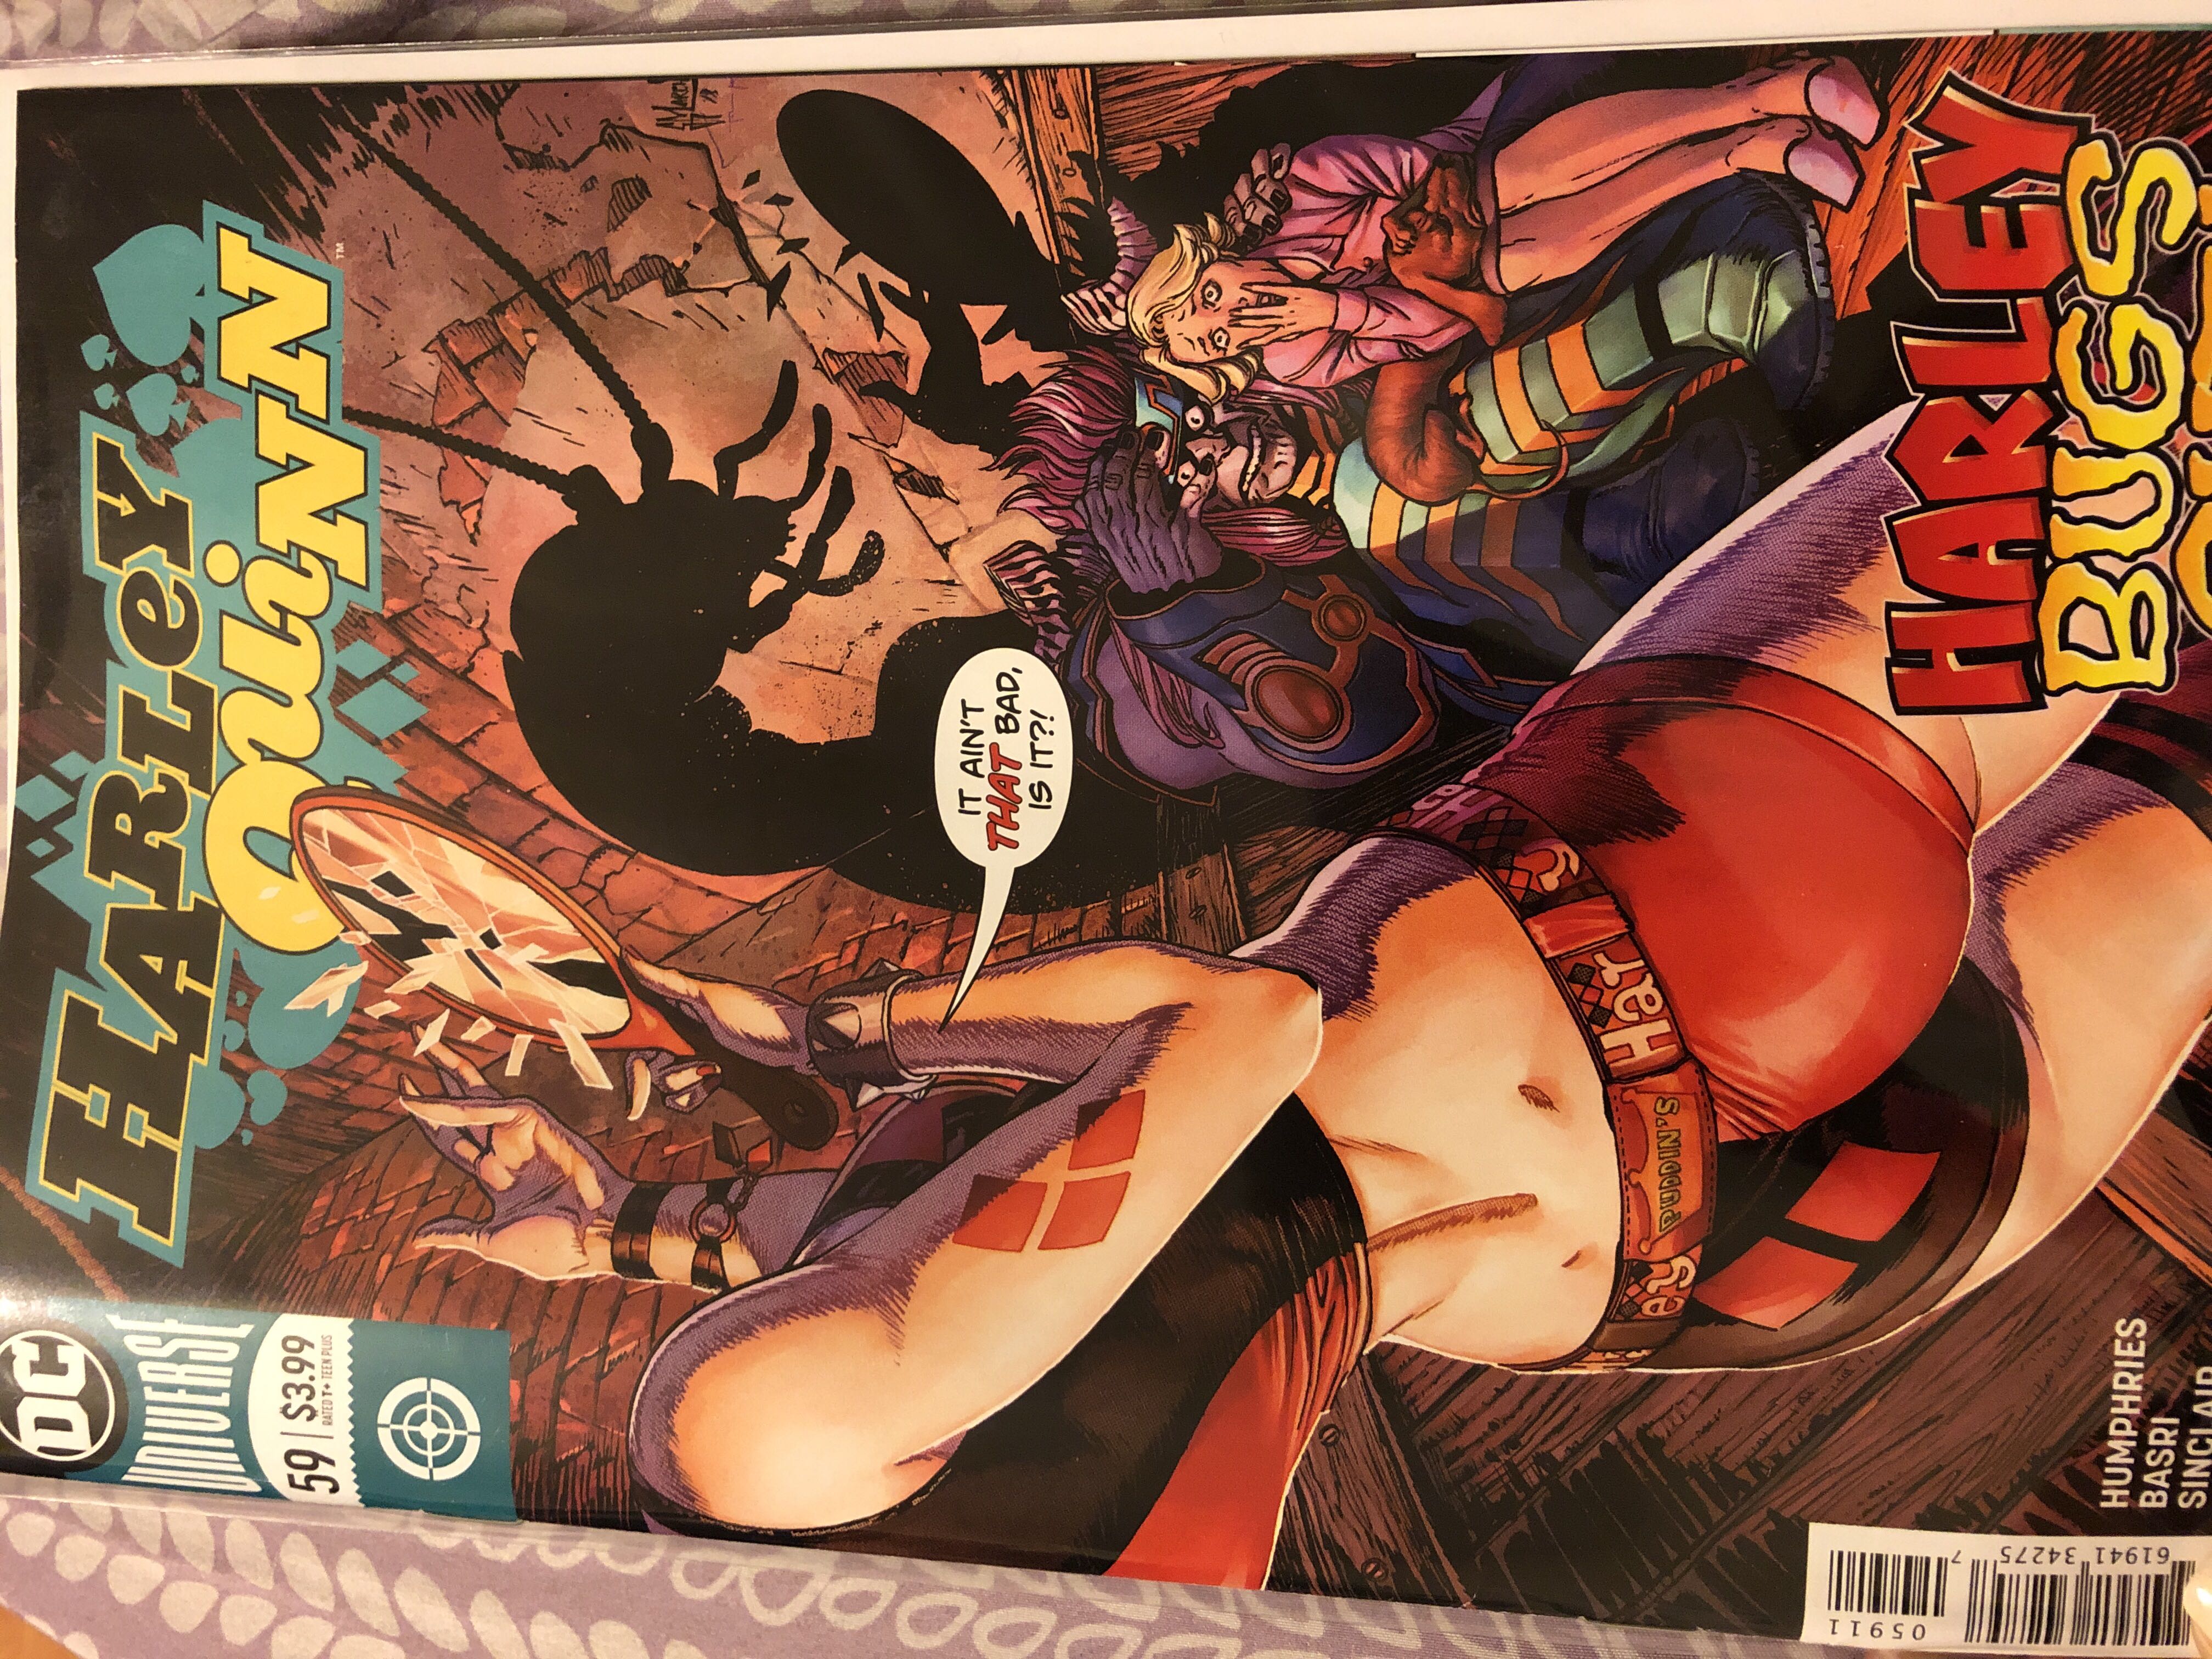 Harley Quinn - DC Universe (59 - May 2019) comic book collectible [Barcode 76194134275705911] - Main Image 1